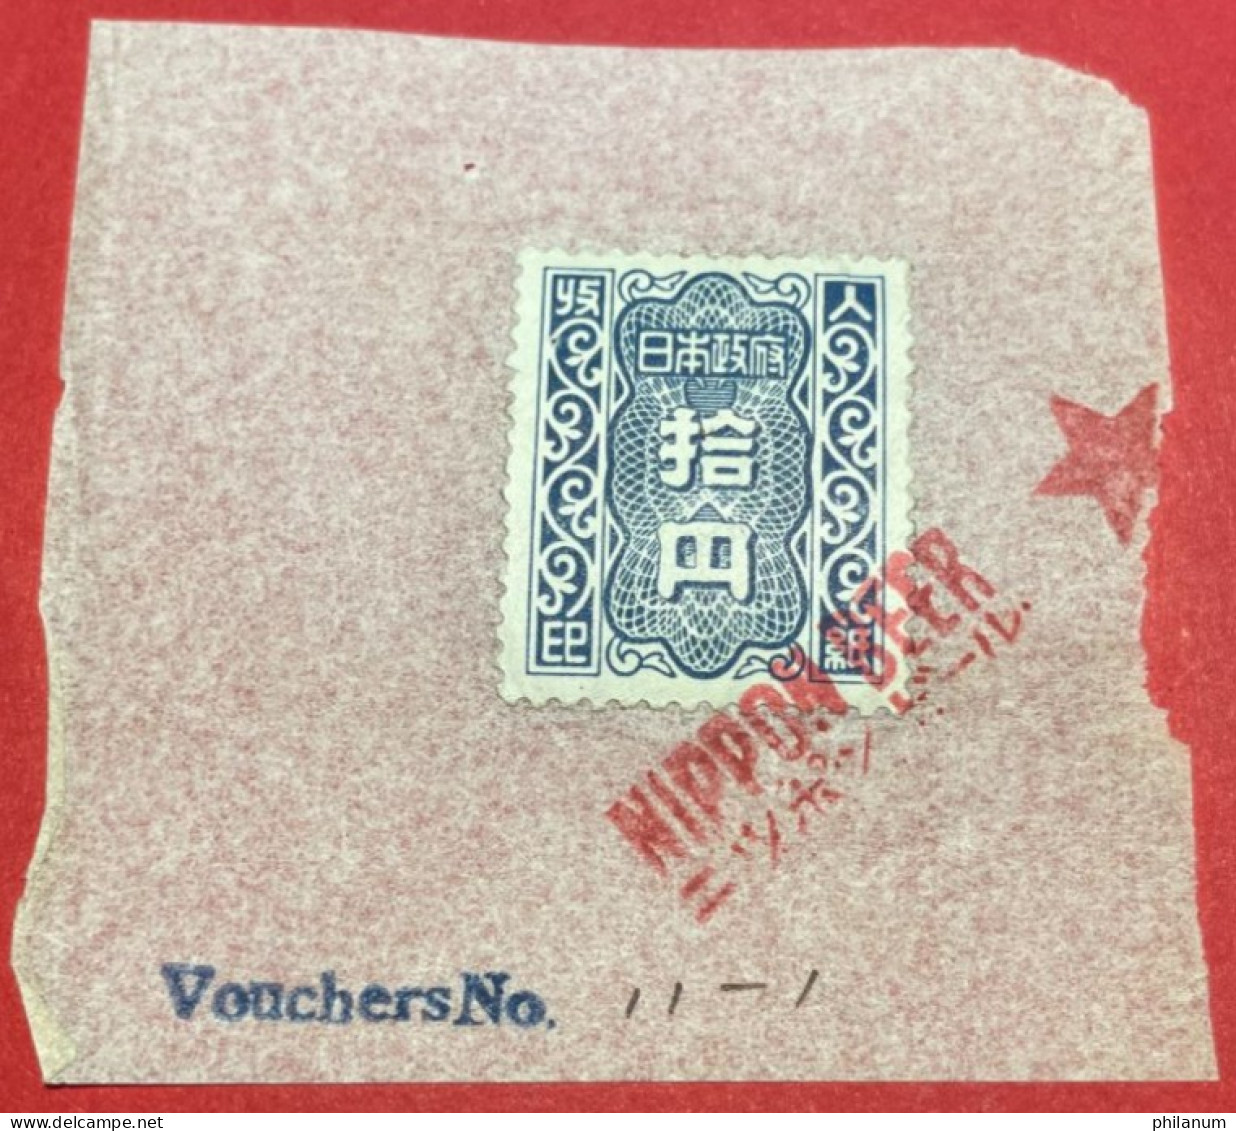 GIAPPONE 1946-1957 - #1 - MARCA DA BOLLO 100 YEN - SHOWAGIAPPONE 1946-1957 - #1 - MARCA DA BOLLO 100 YEN - SHOWA - Storia Postale